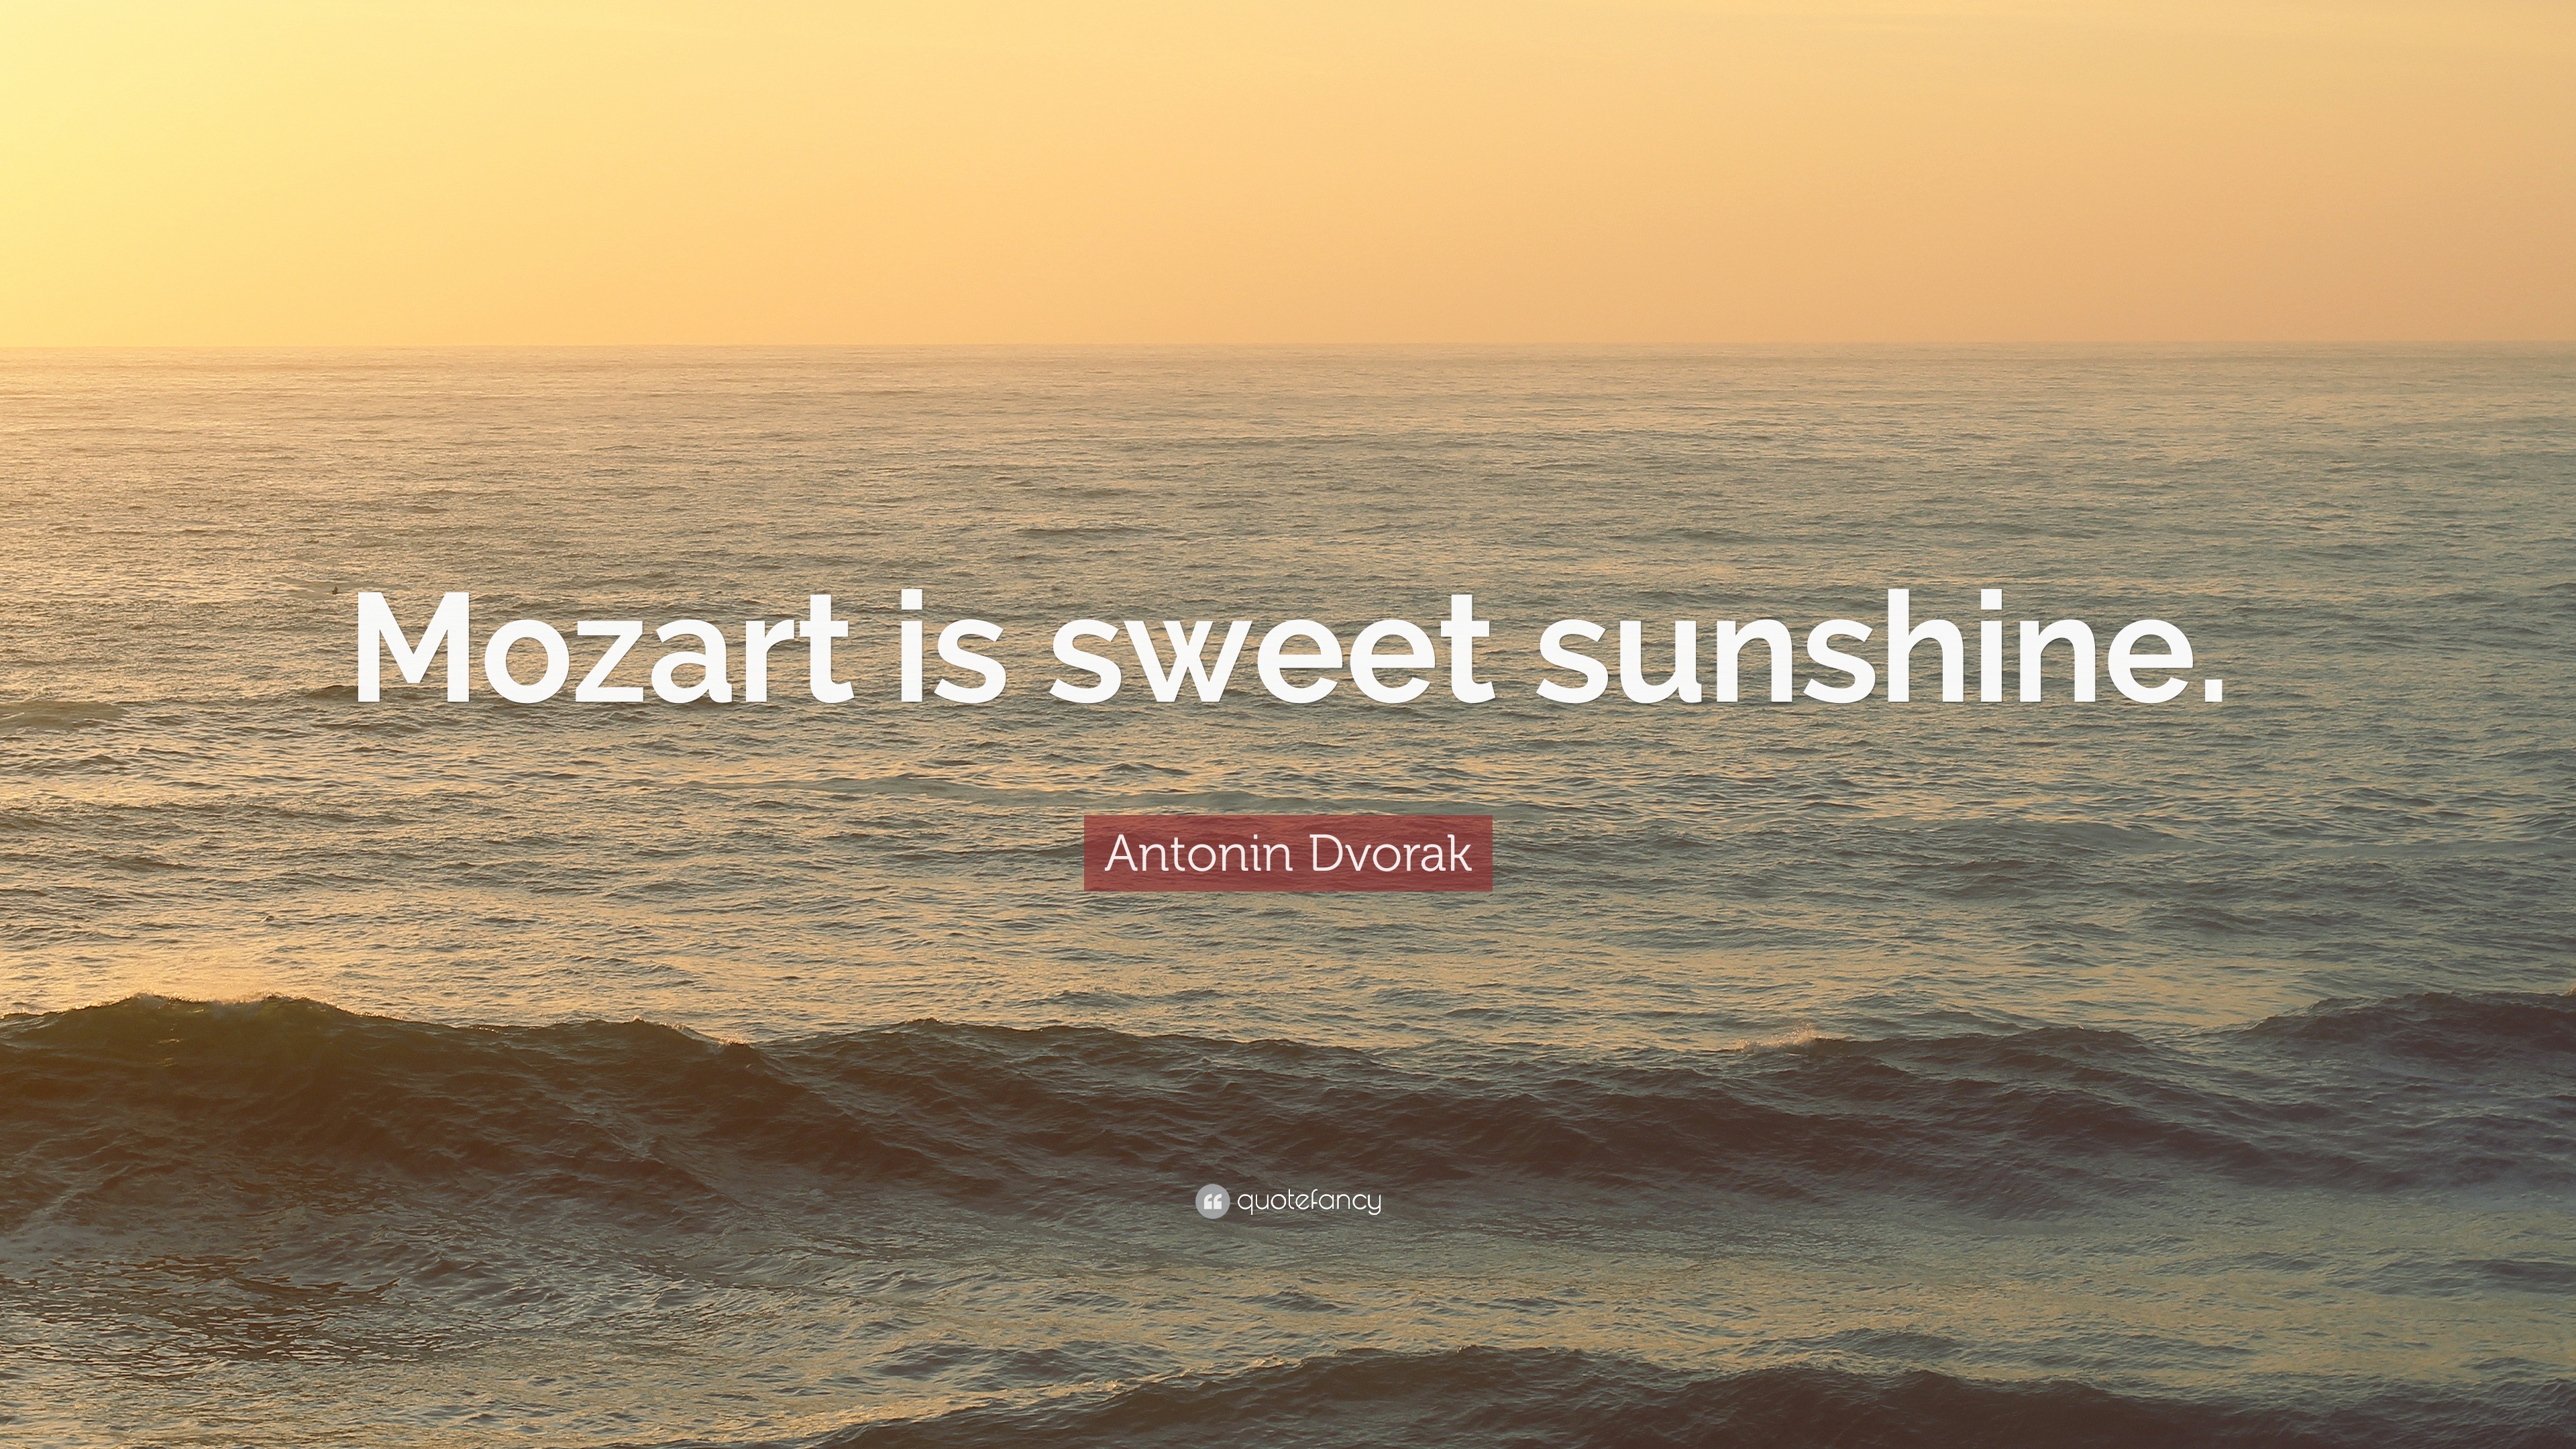 Antonin Dvorak Quote: “Mozart is sweet sunshine.”